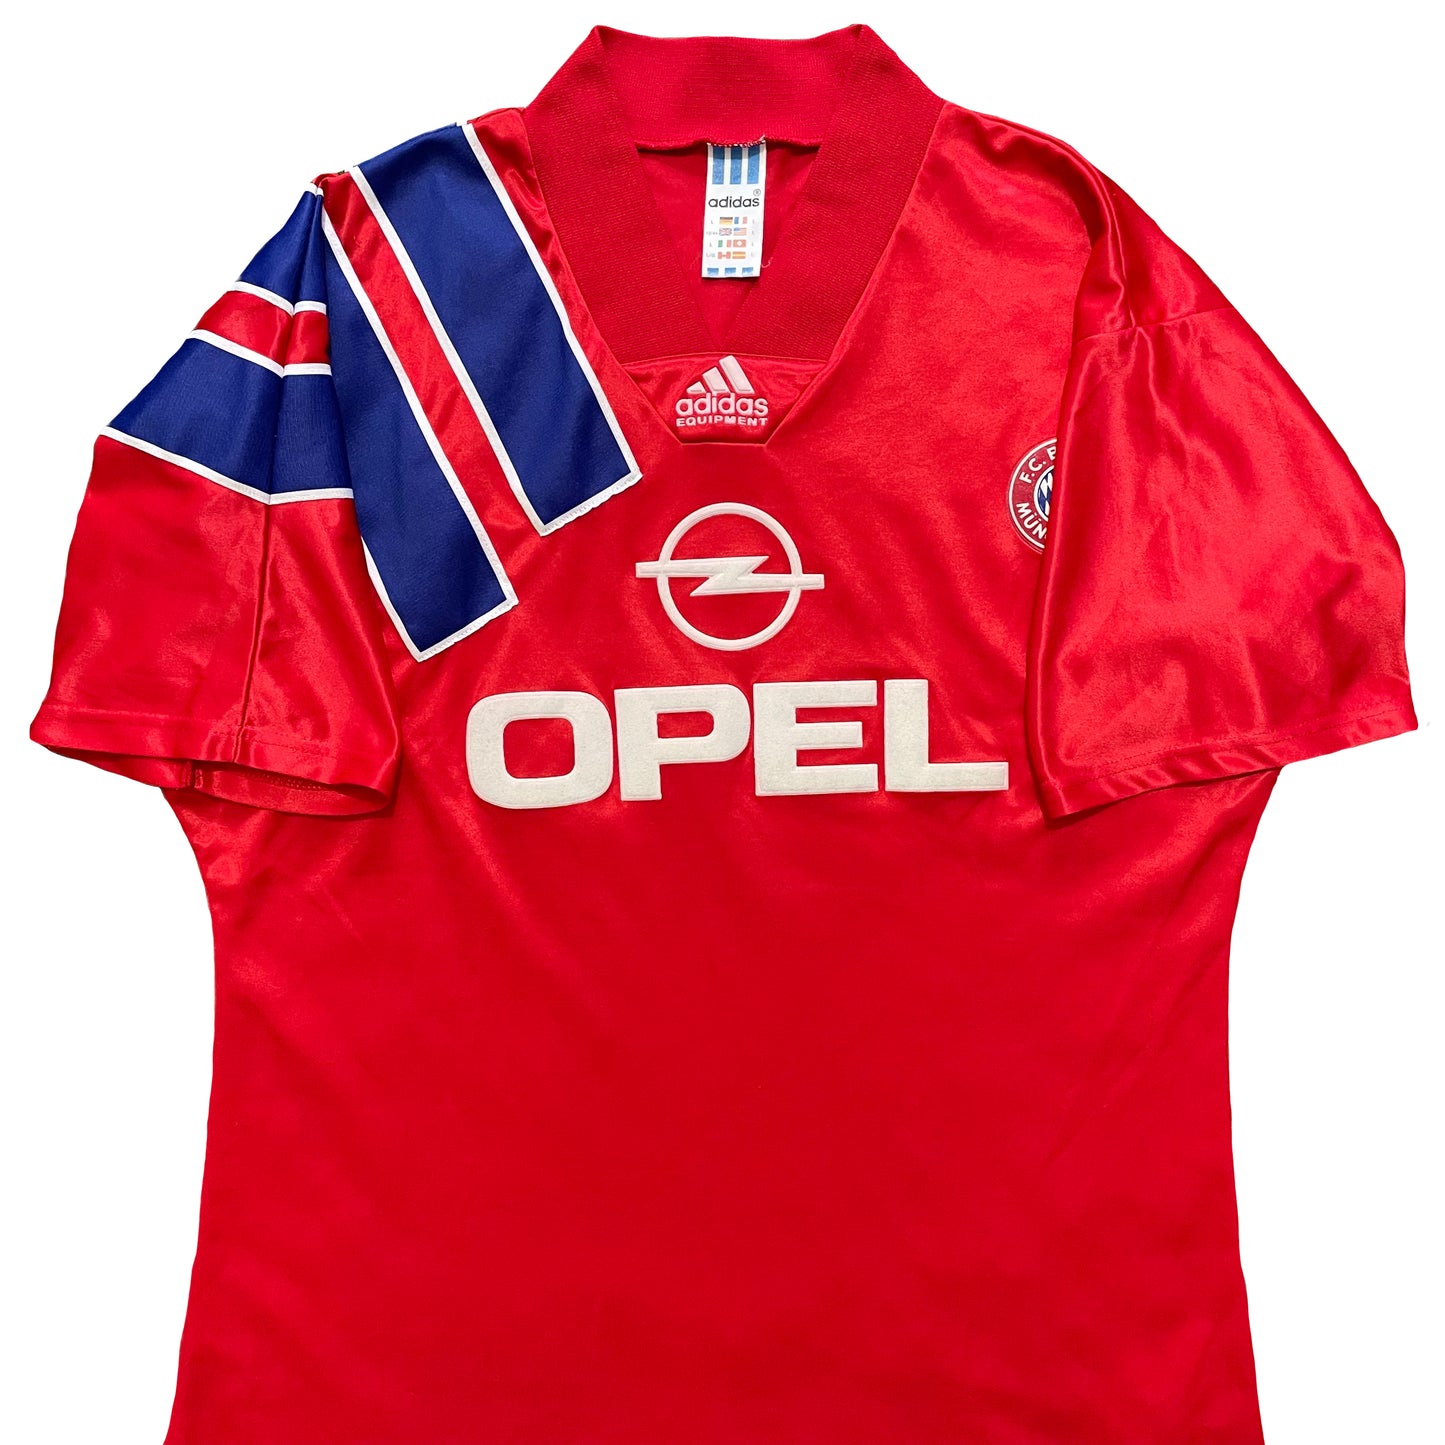 1991-1993 FC Bayern München home shirt (L)